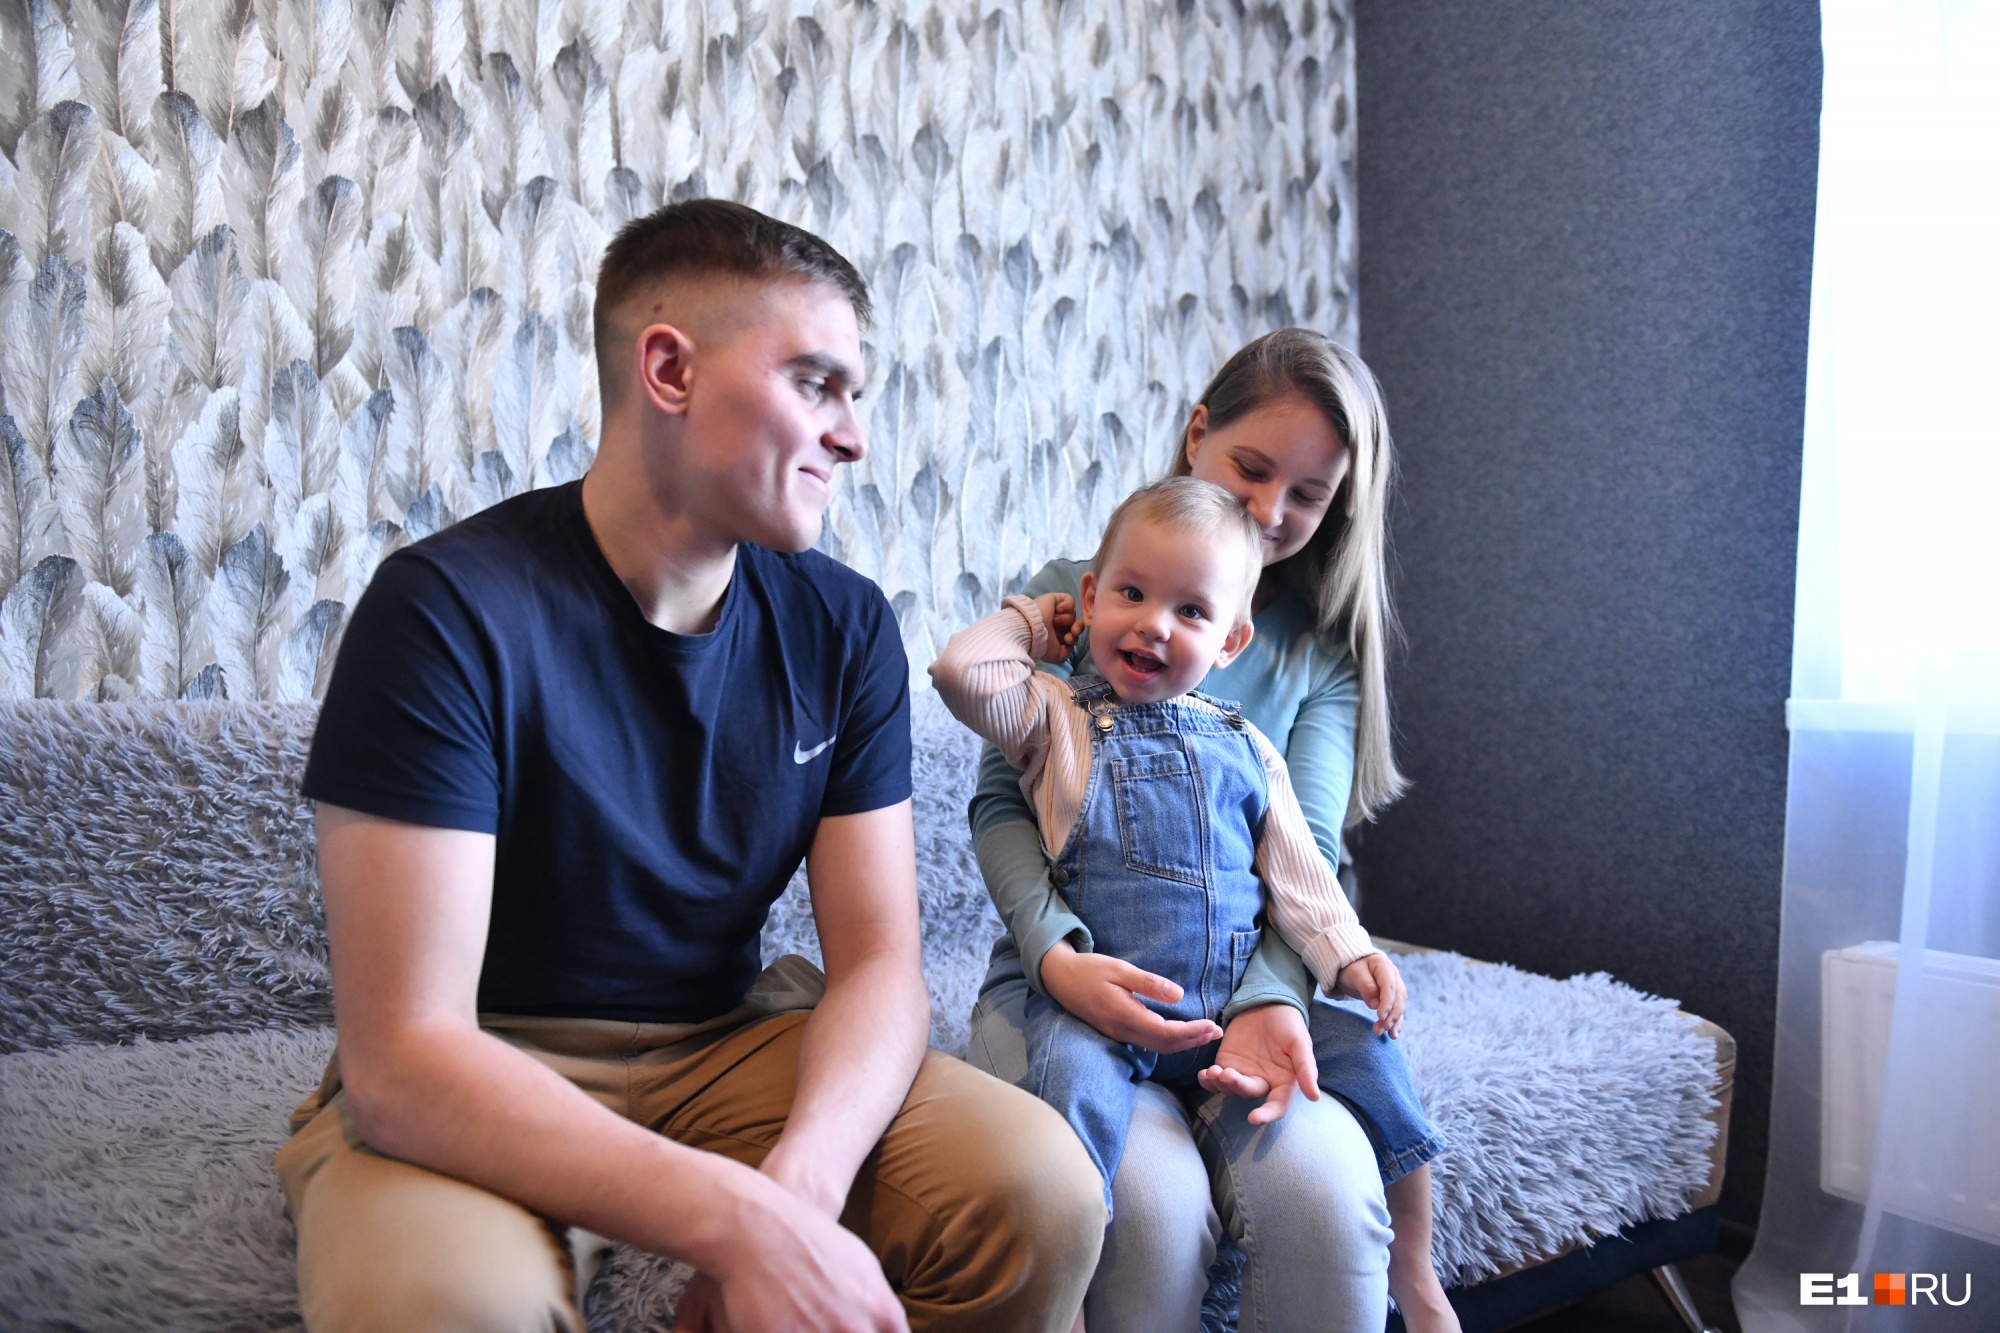 В Екатеринбурге собирают 150 млн на лечение малыша, которому мама раньше врачей диагностировала СМА